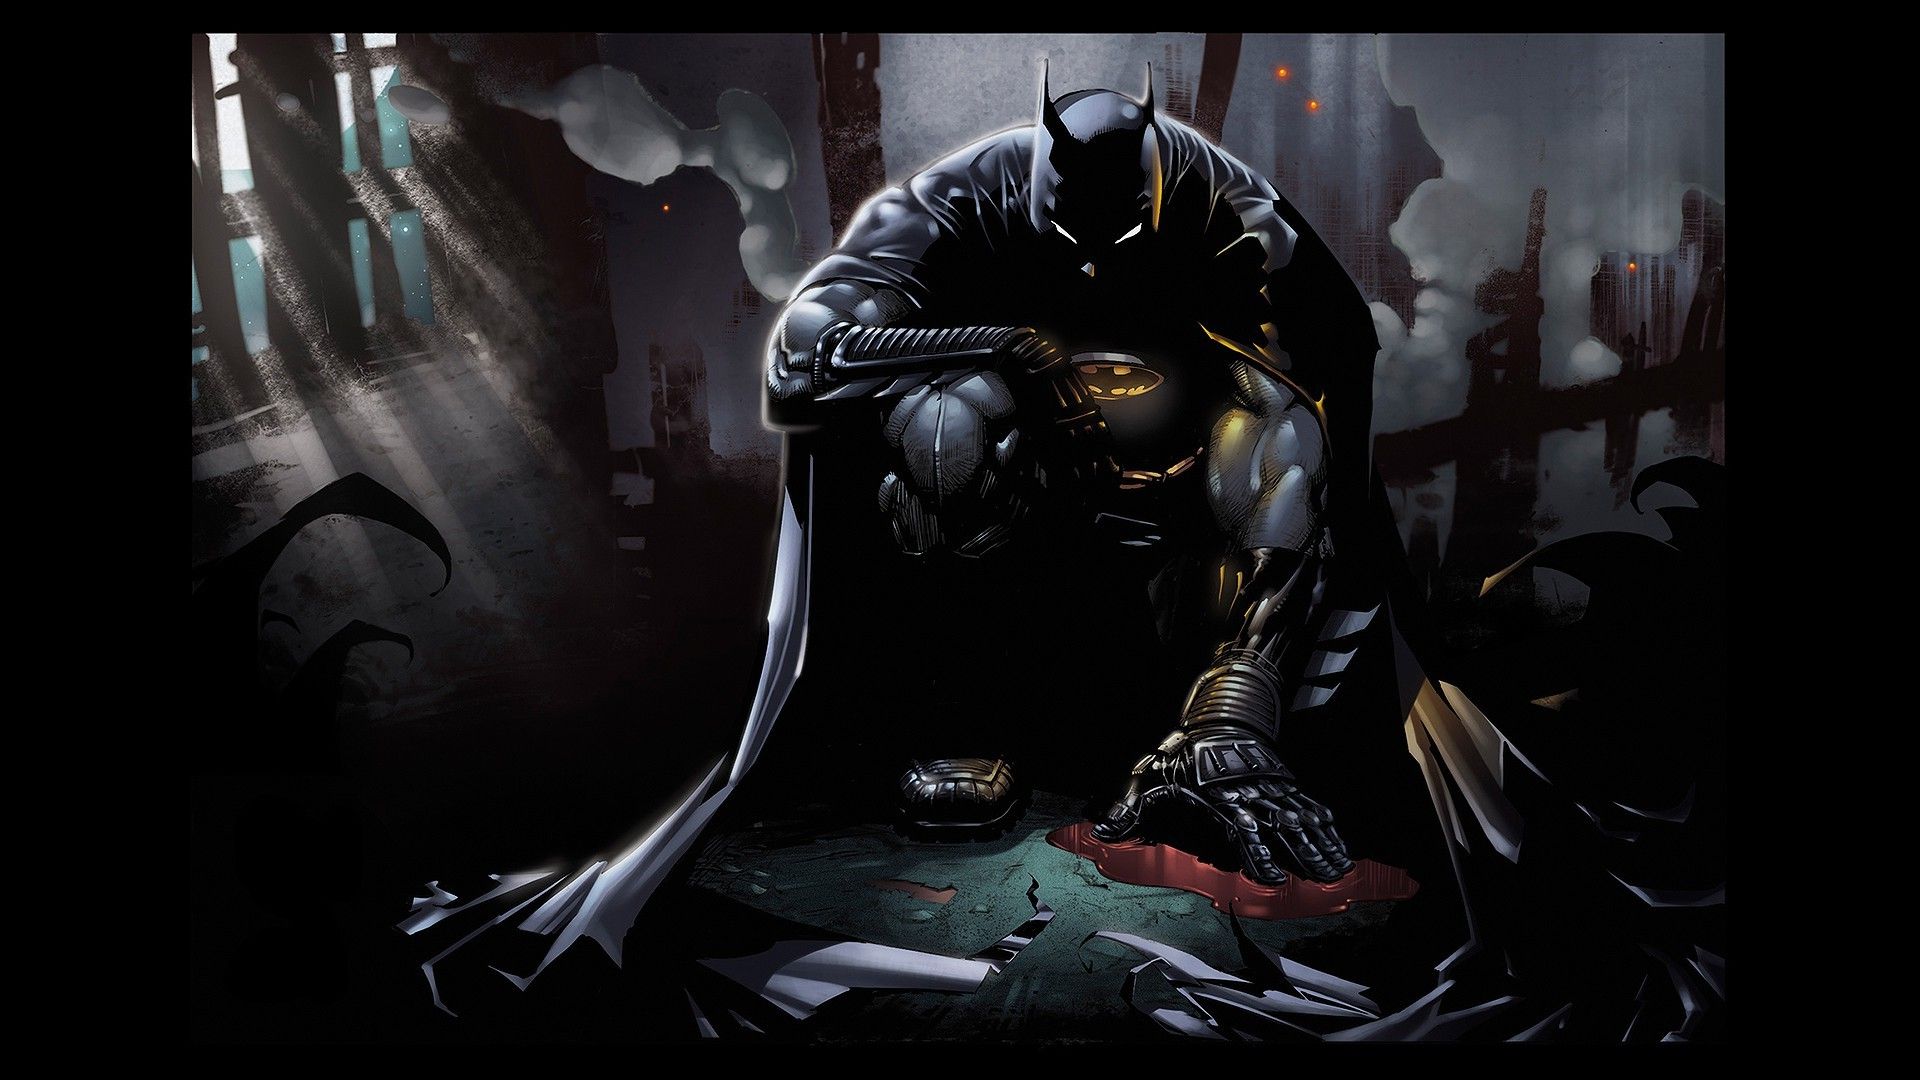 Hãy đến và khám phá hình ảnh của Batman - siêu anh hùng với cái đầu thông minh và kỹ năng võ thuật tuyệt vời. Heo hút với bộ giáp và áo choàng đen, Batman chắc chắn sẽ không làm bạn thất vọng!